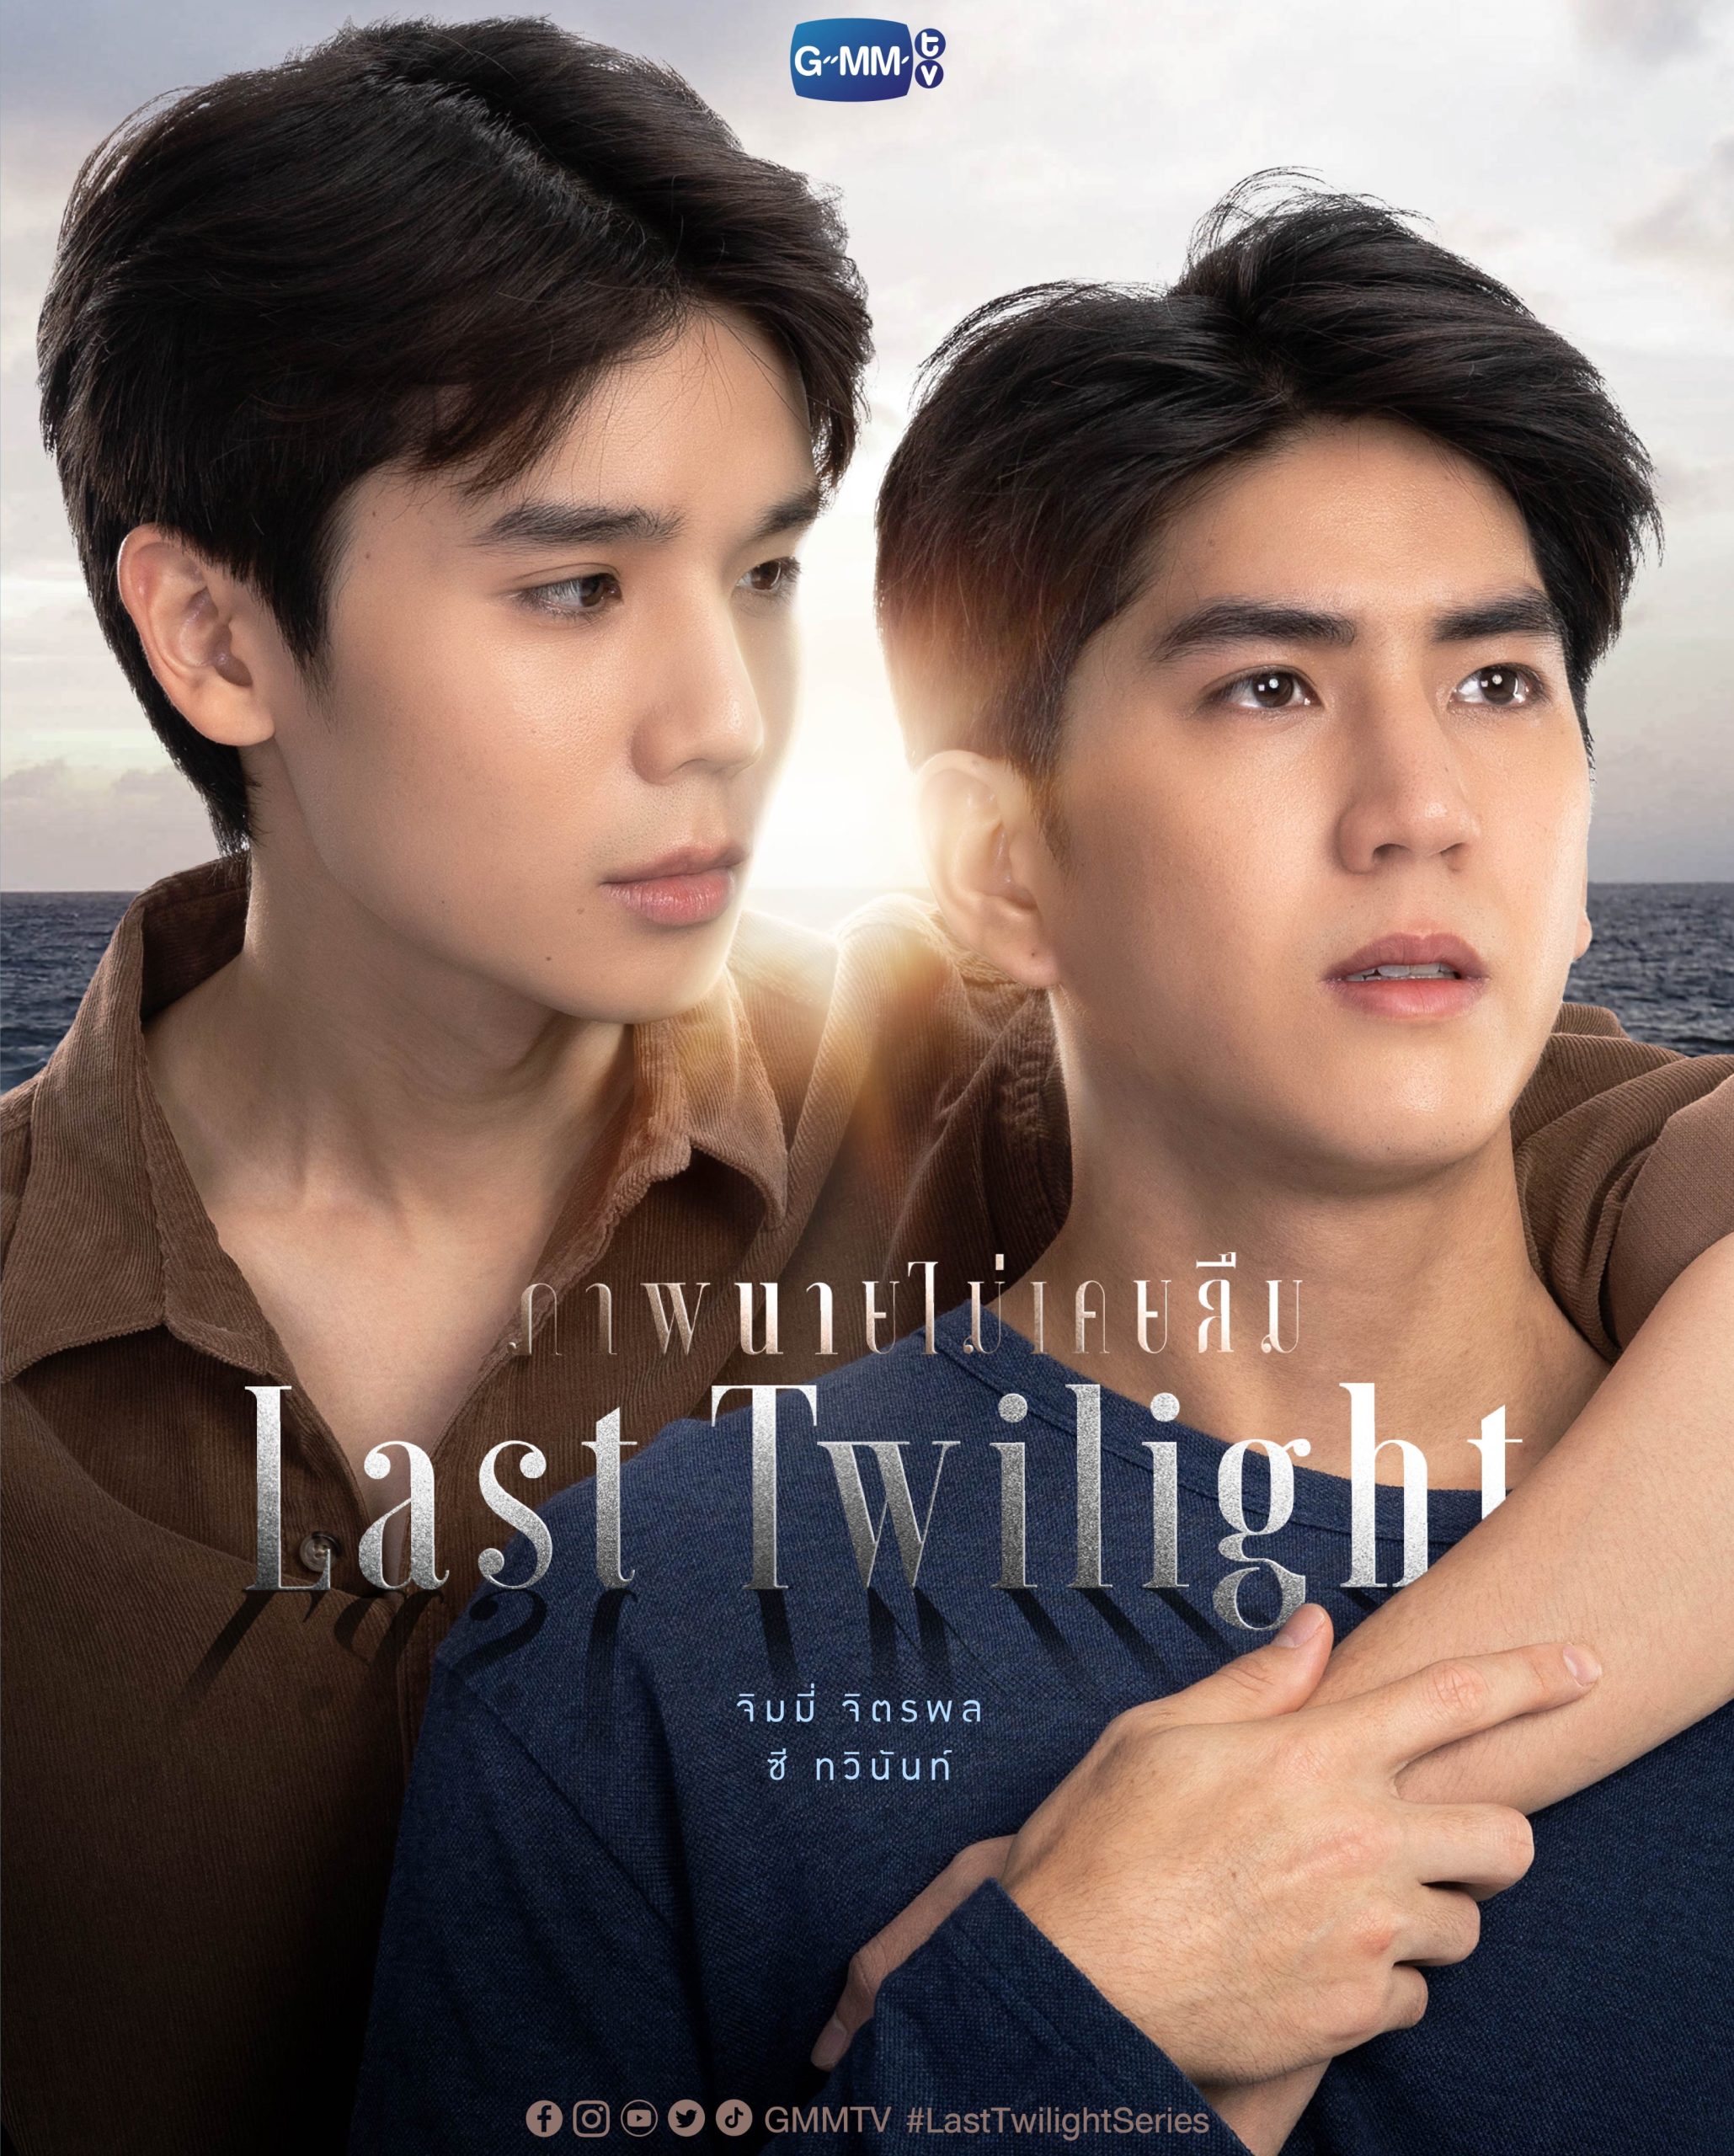 ดูหนังออนไลน์ฟรี ซีรี่ส์วายไทย Last Twilight ภาพนายไม่เคยลืม